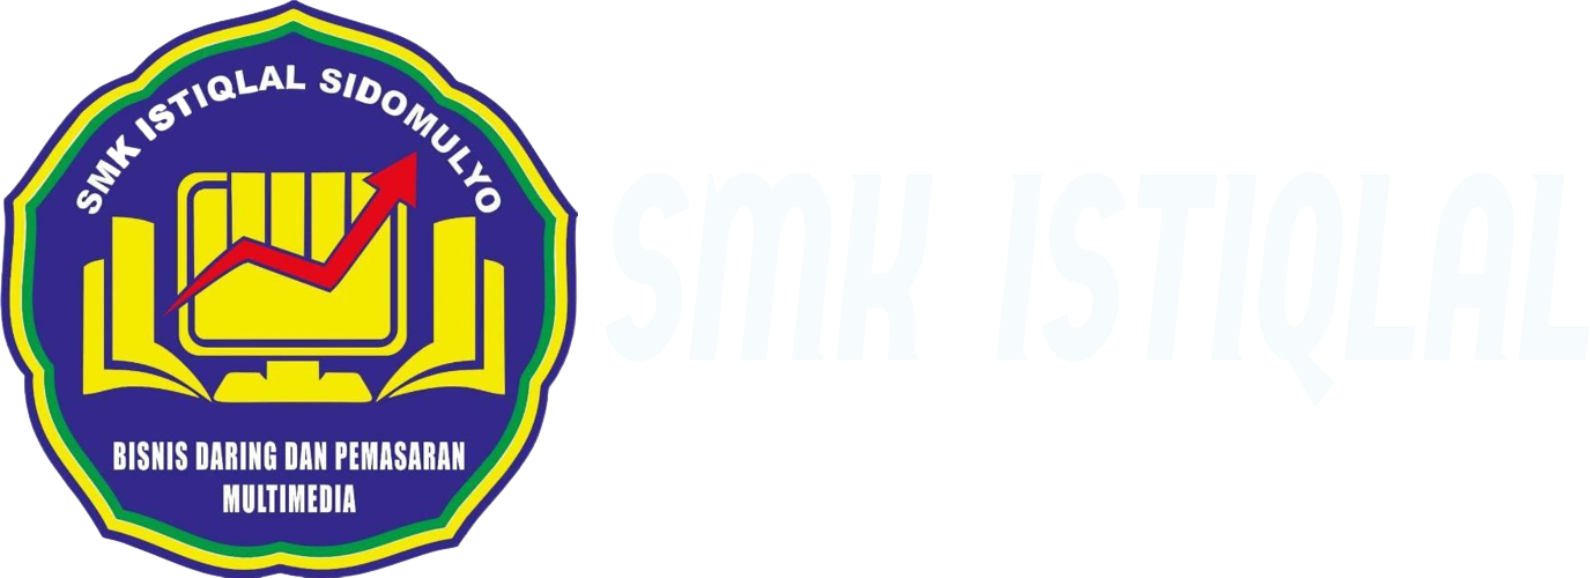 SMK ISTIQLAL SIDOMULYO